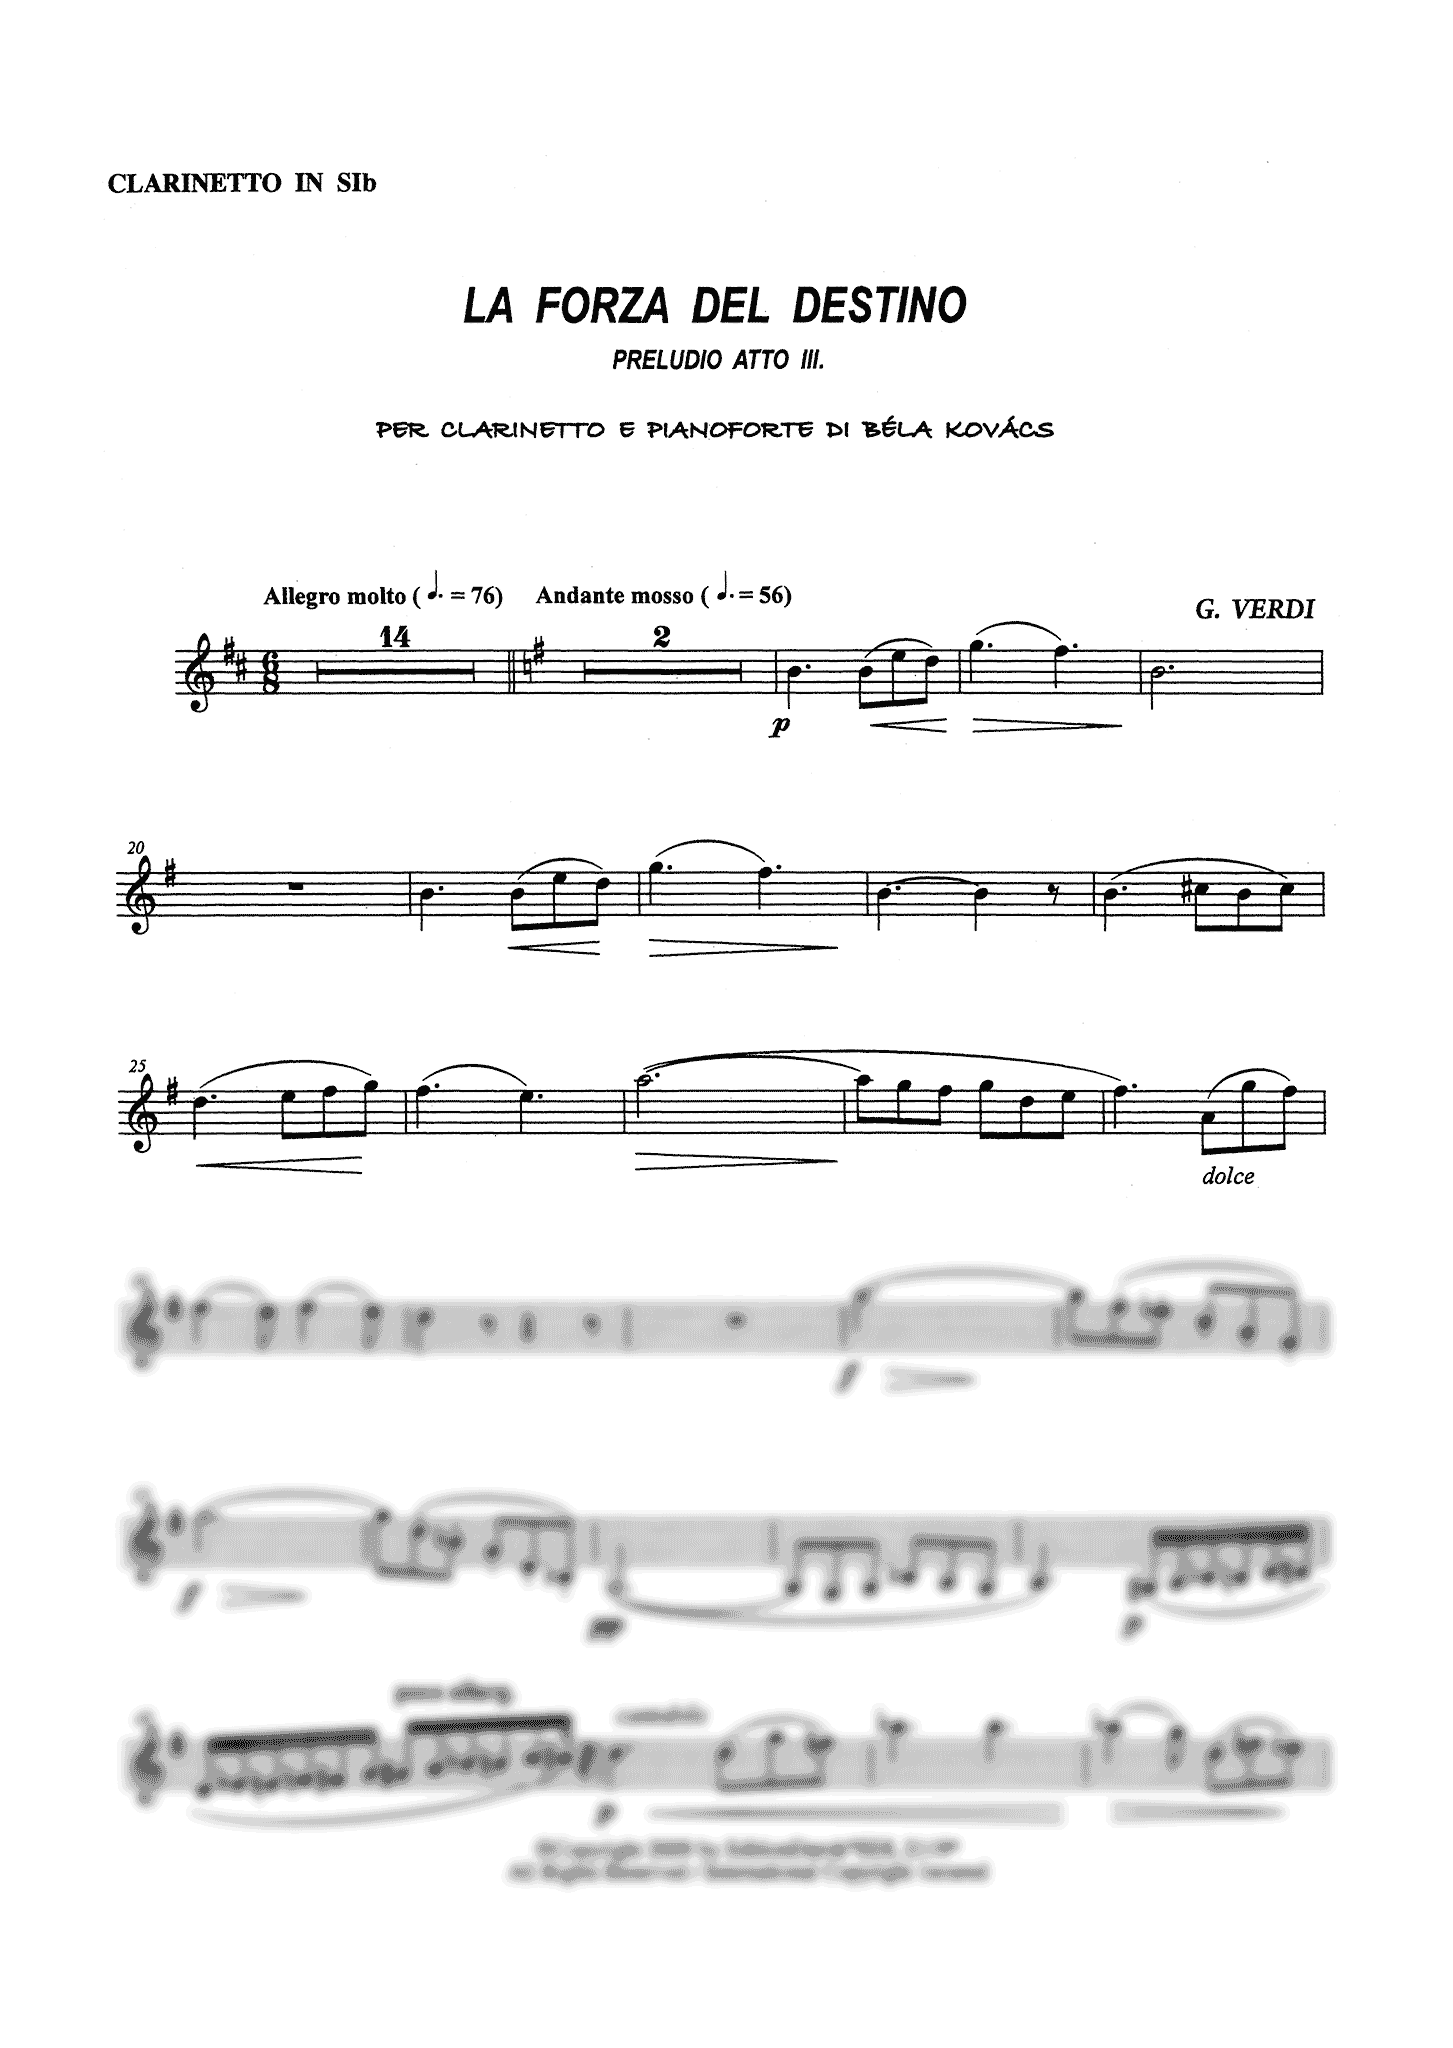 Verdi Pelude to Act 3, from ‘La Forza del Destino’ arranged for clarinet piano Kovacs solo part